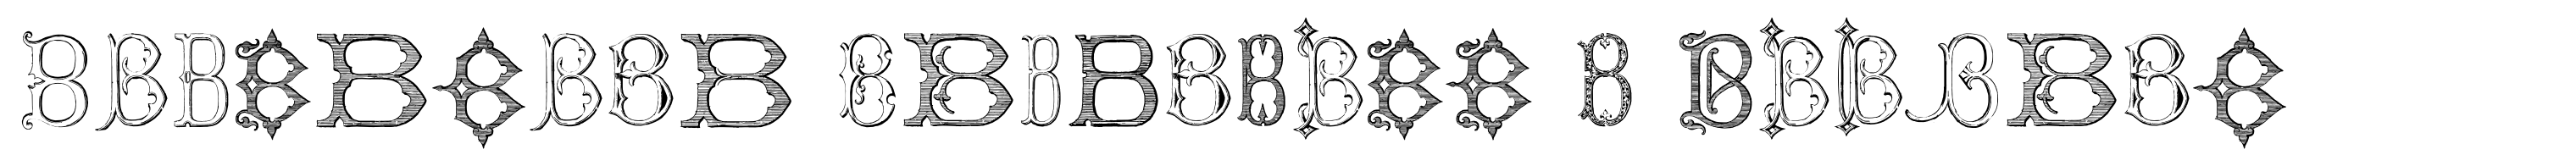 Victorian Alphabets B Regular